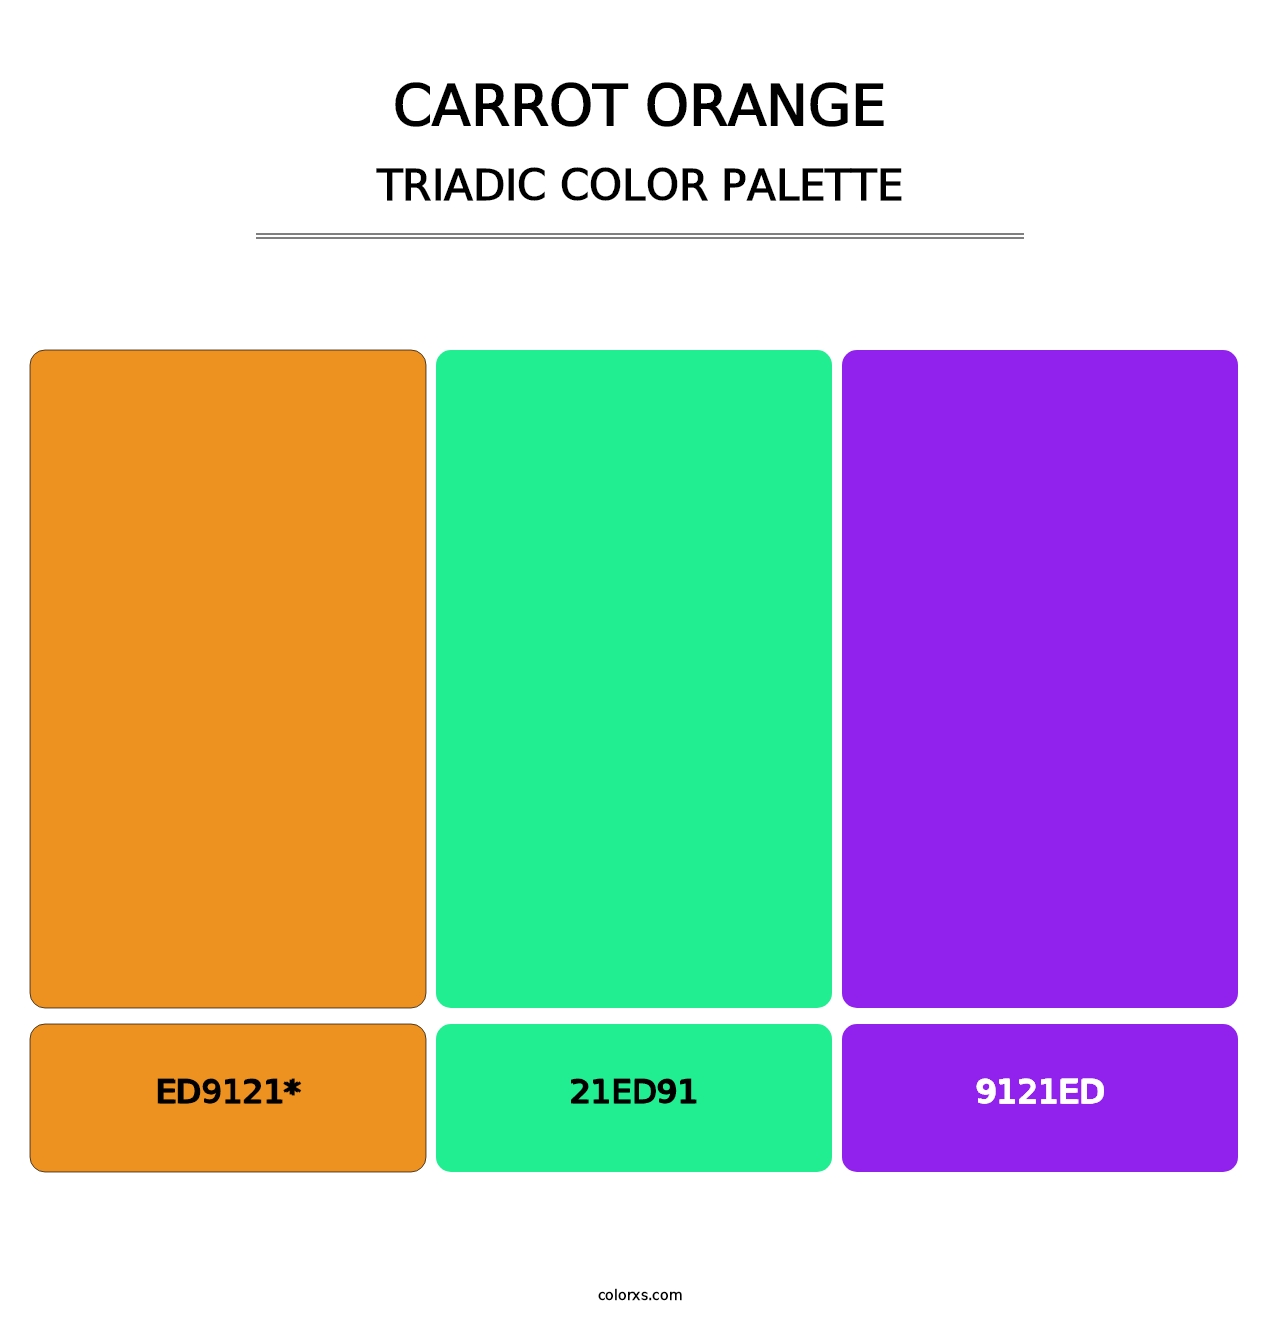 Carrot Orange - Triadic Color Palette